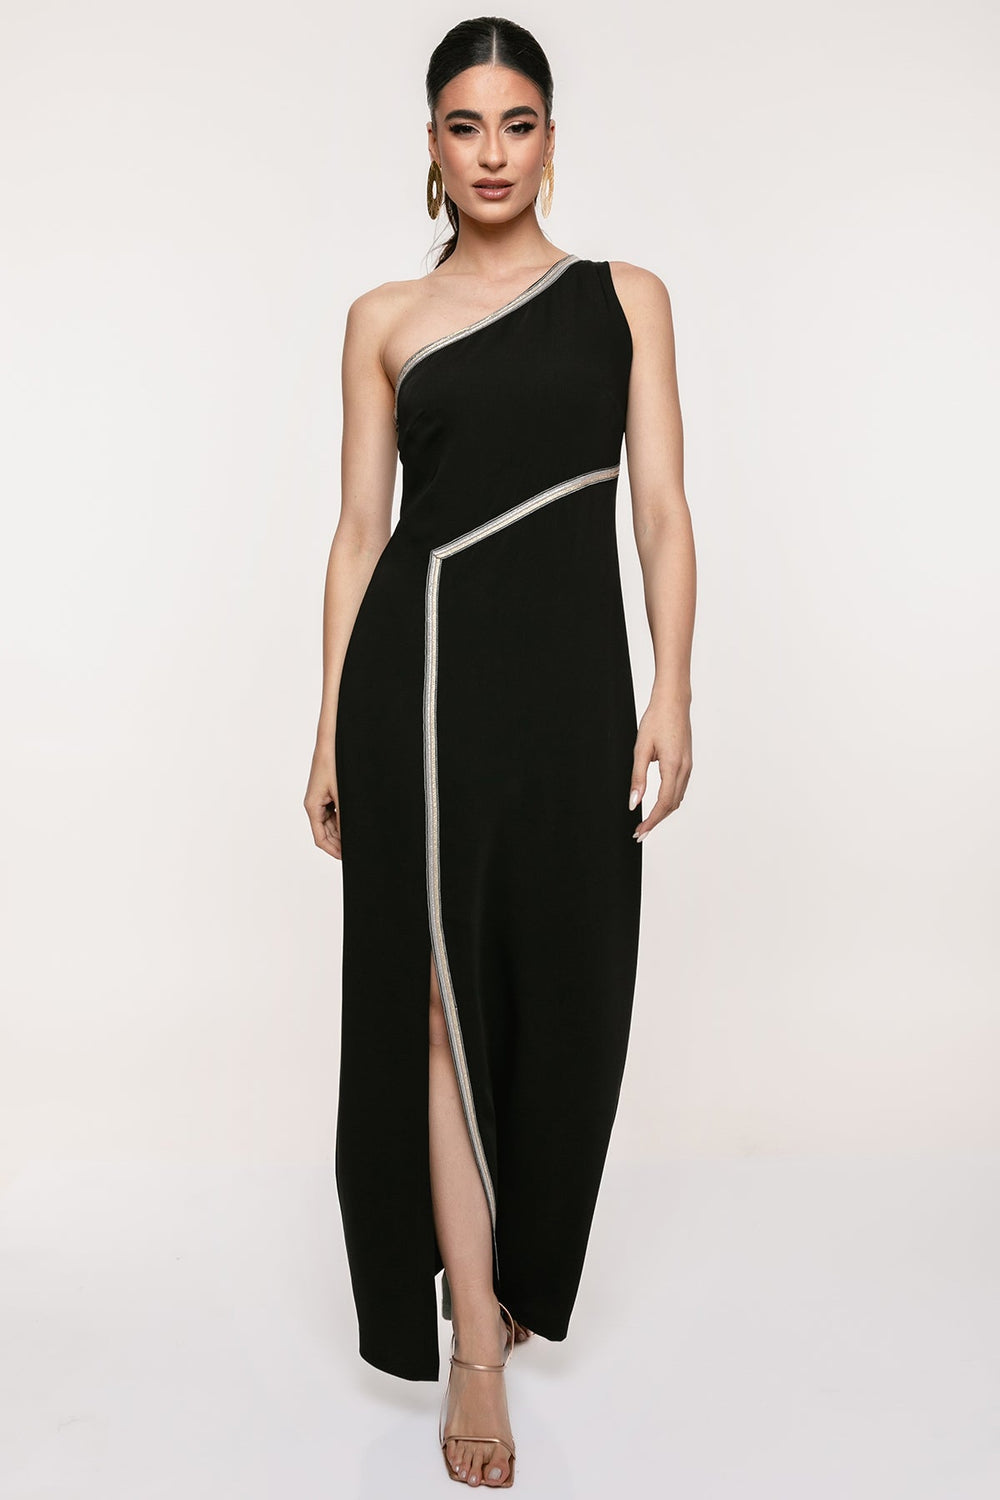 Φόρεμα μάξι με έναν ώμο και σκίσιμο Coelia - A Collection Boutique